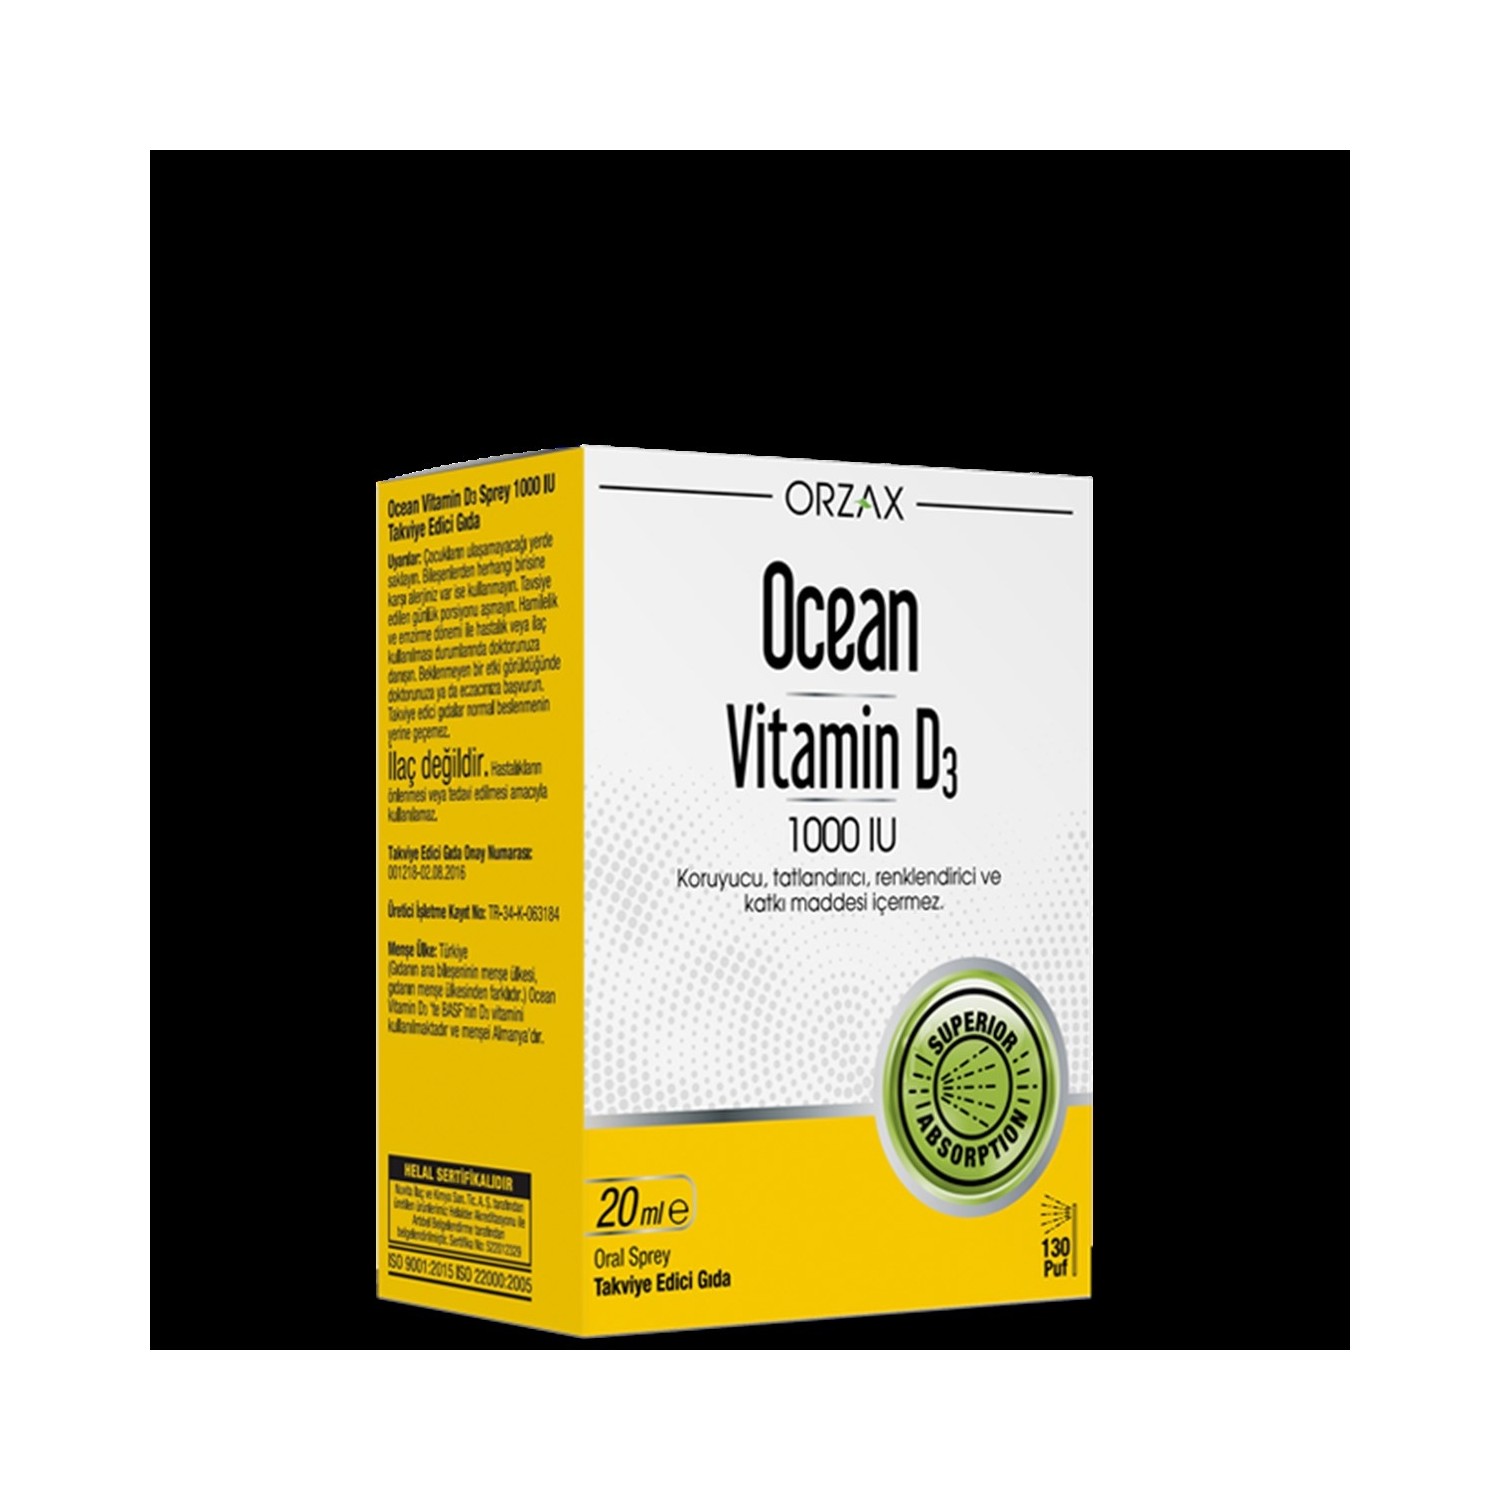 Спрей Витамин D3 Ocean Orzax 1000 МЕ, 20 мл